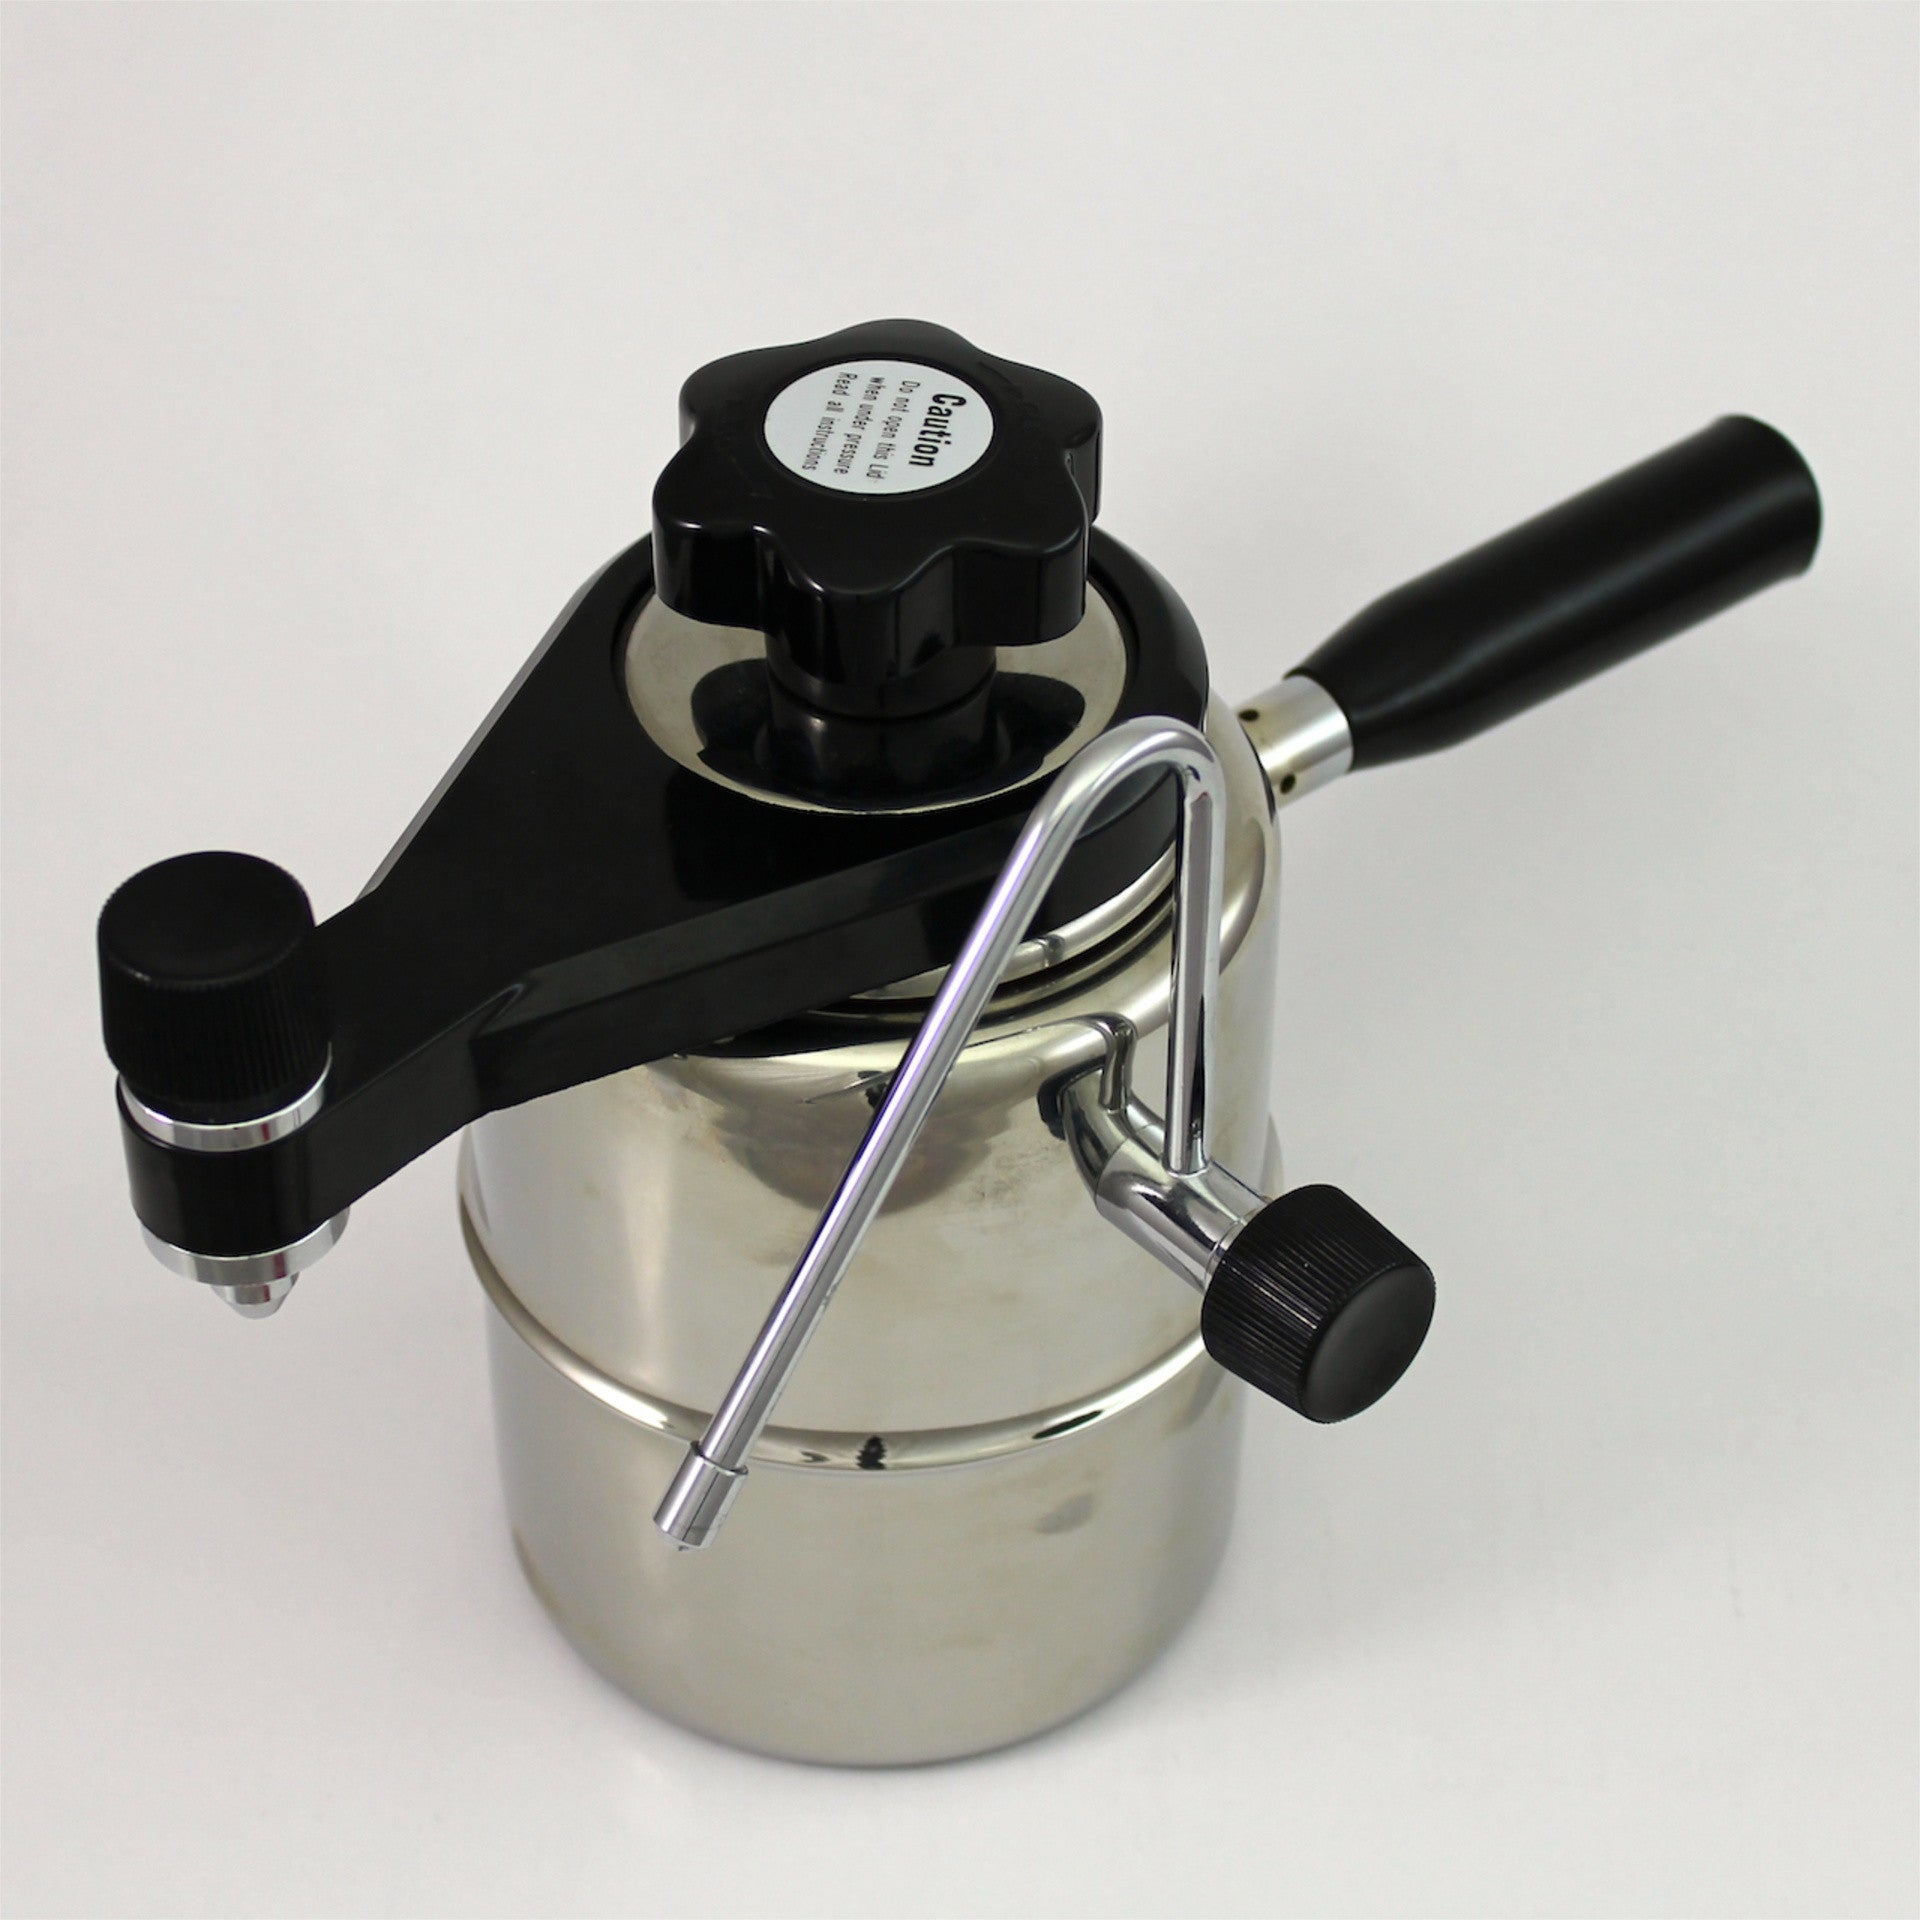 Bellman CX-25 Stove Top Espresso Maker With Steamer - Crema